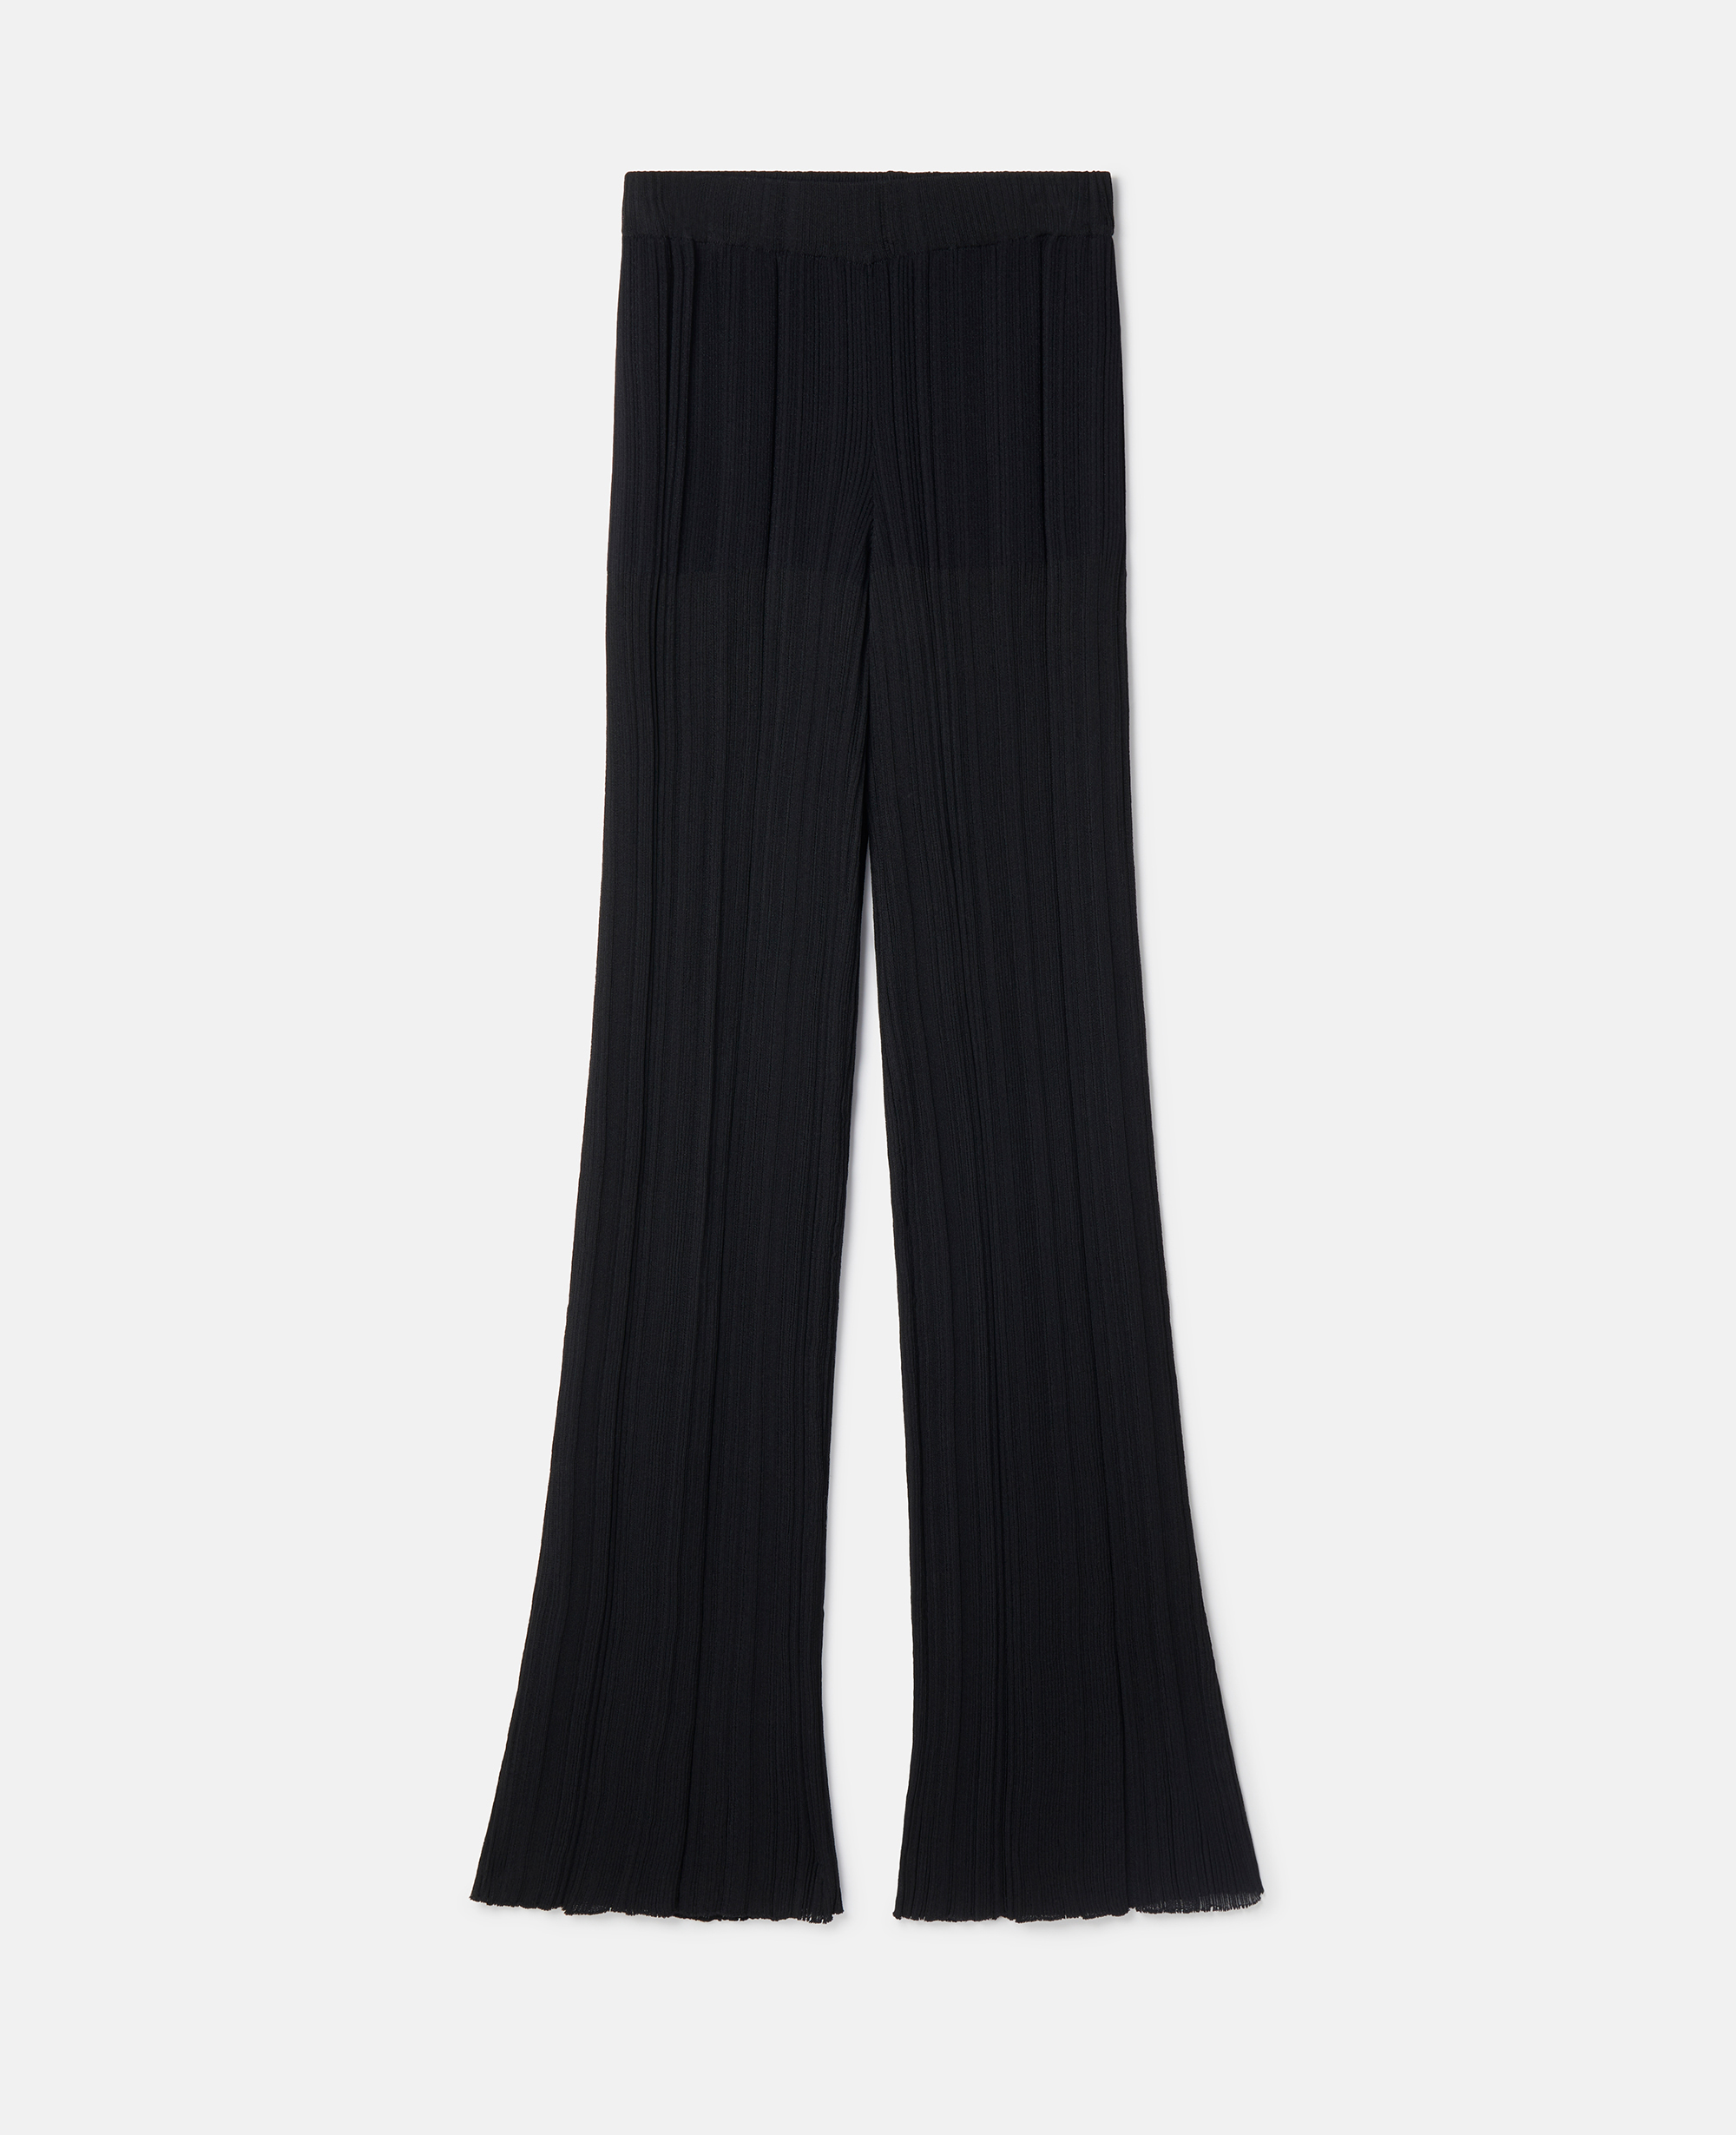 Stella Mccartney Plisse Pleat Knit Trousers In Black